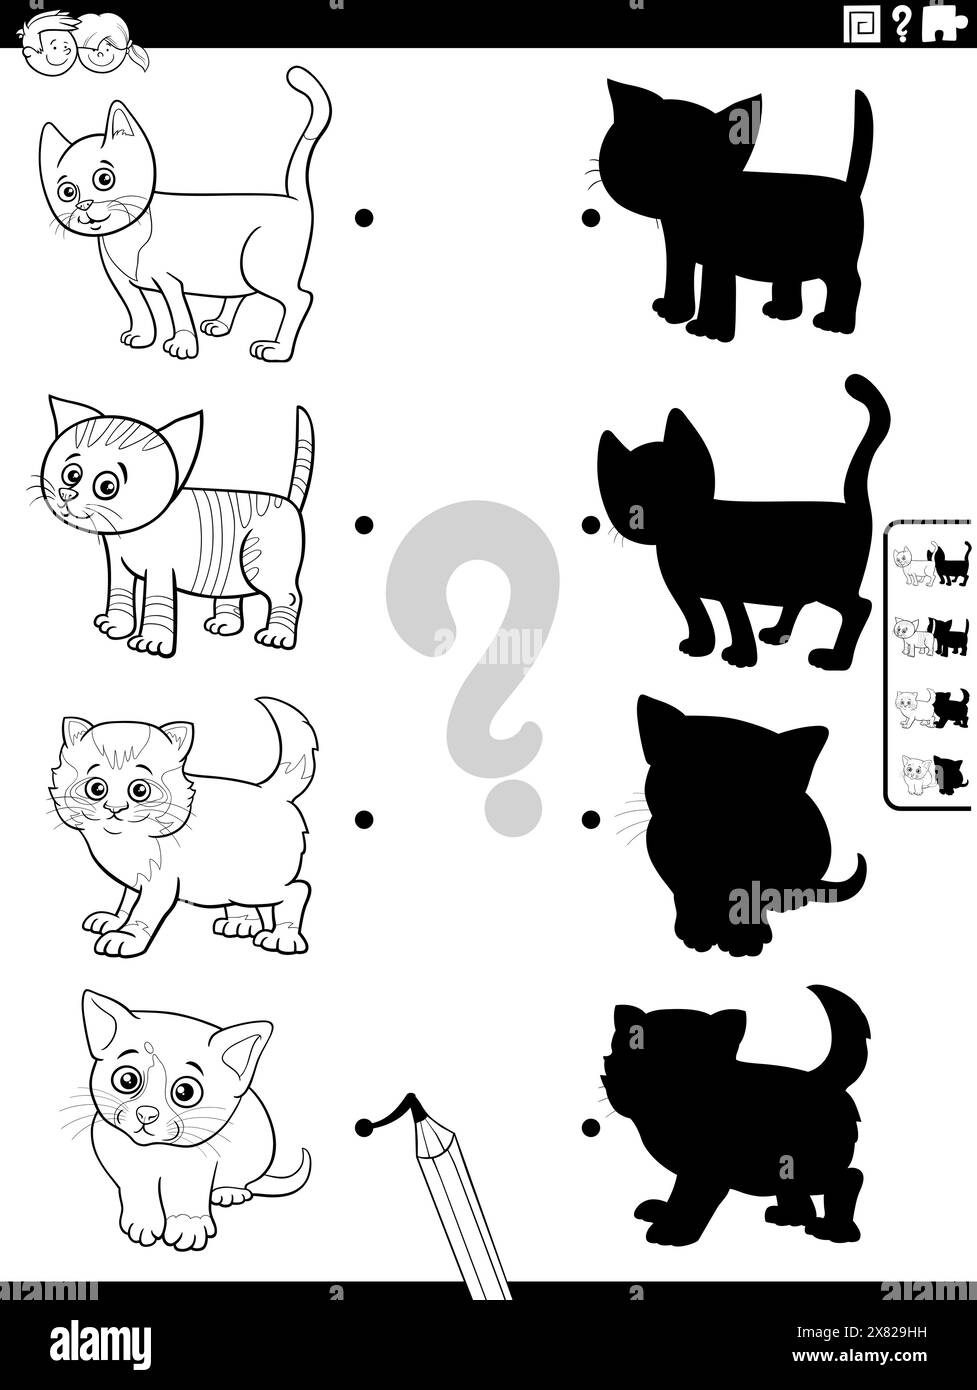 Illustration de dessin animé noir et blanc de match les ombres droites avec des images jeu éducatif avec drôle de chatons coloriage Illustration de Vecteur